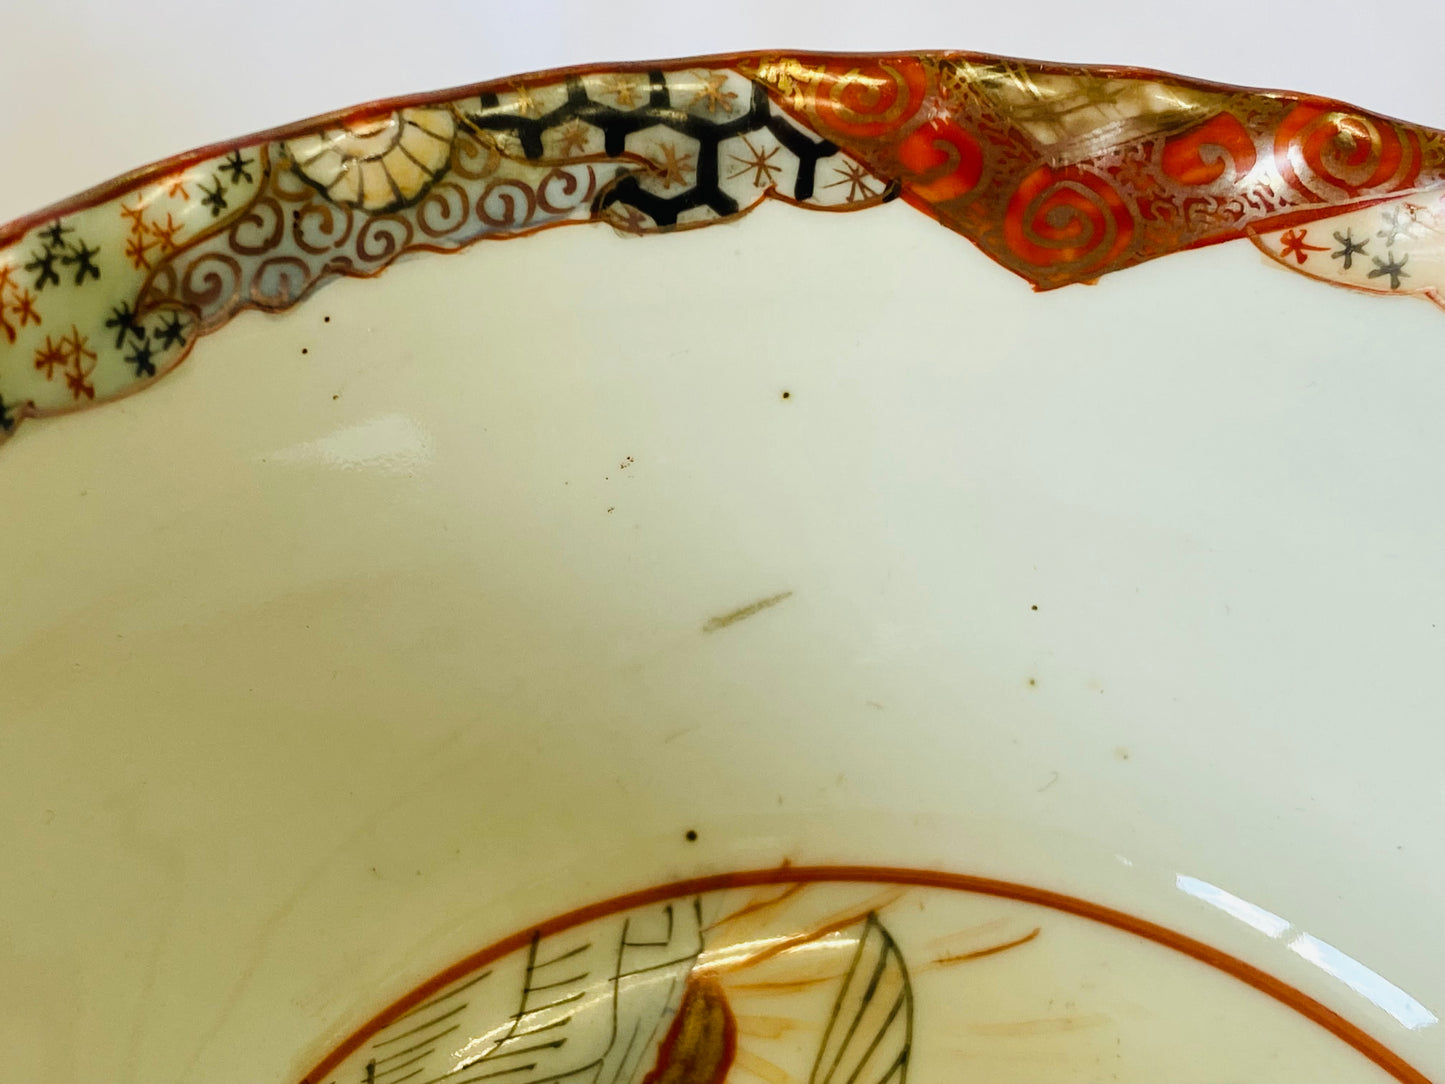 Y4607 HAISEN Kutani-ware color paint cup pair Japan antique vintage tableware